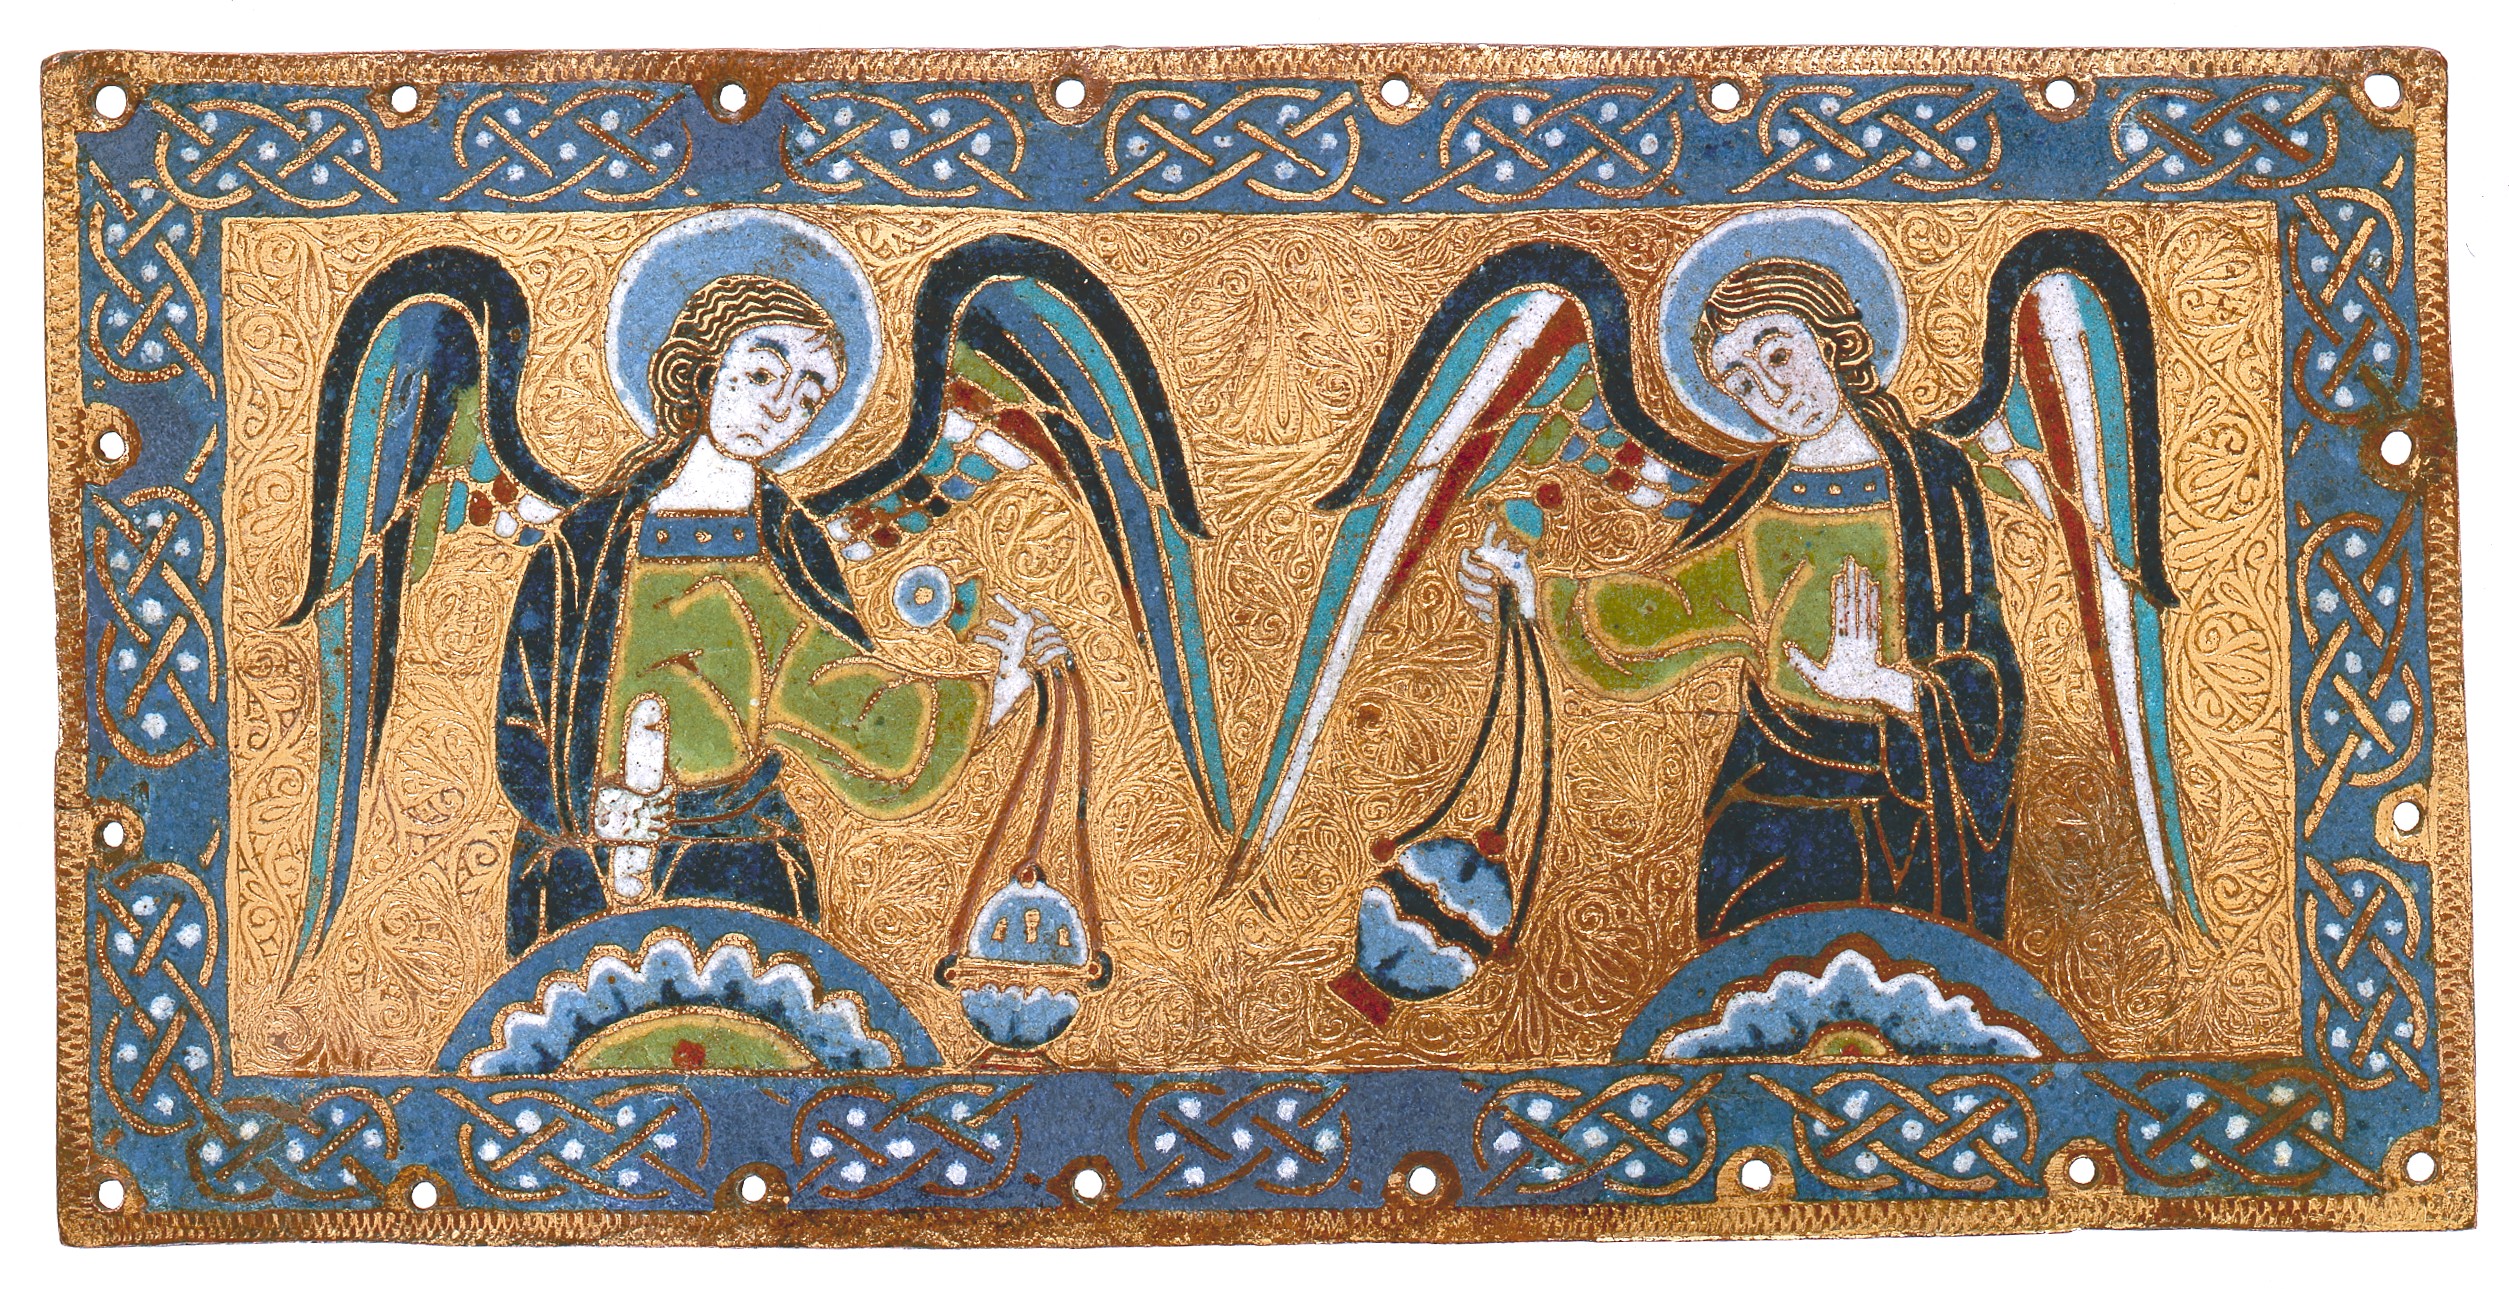 Plakett tömjénező angyalokkal by Unknown Artist - 1170–80 körül - 11 x 22,1 x 0,3 cm 